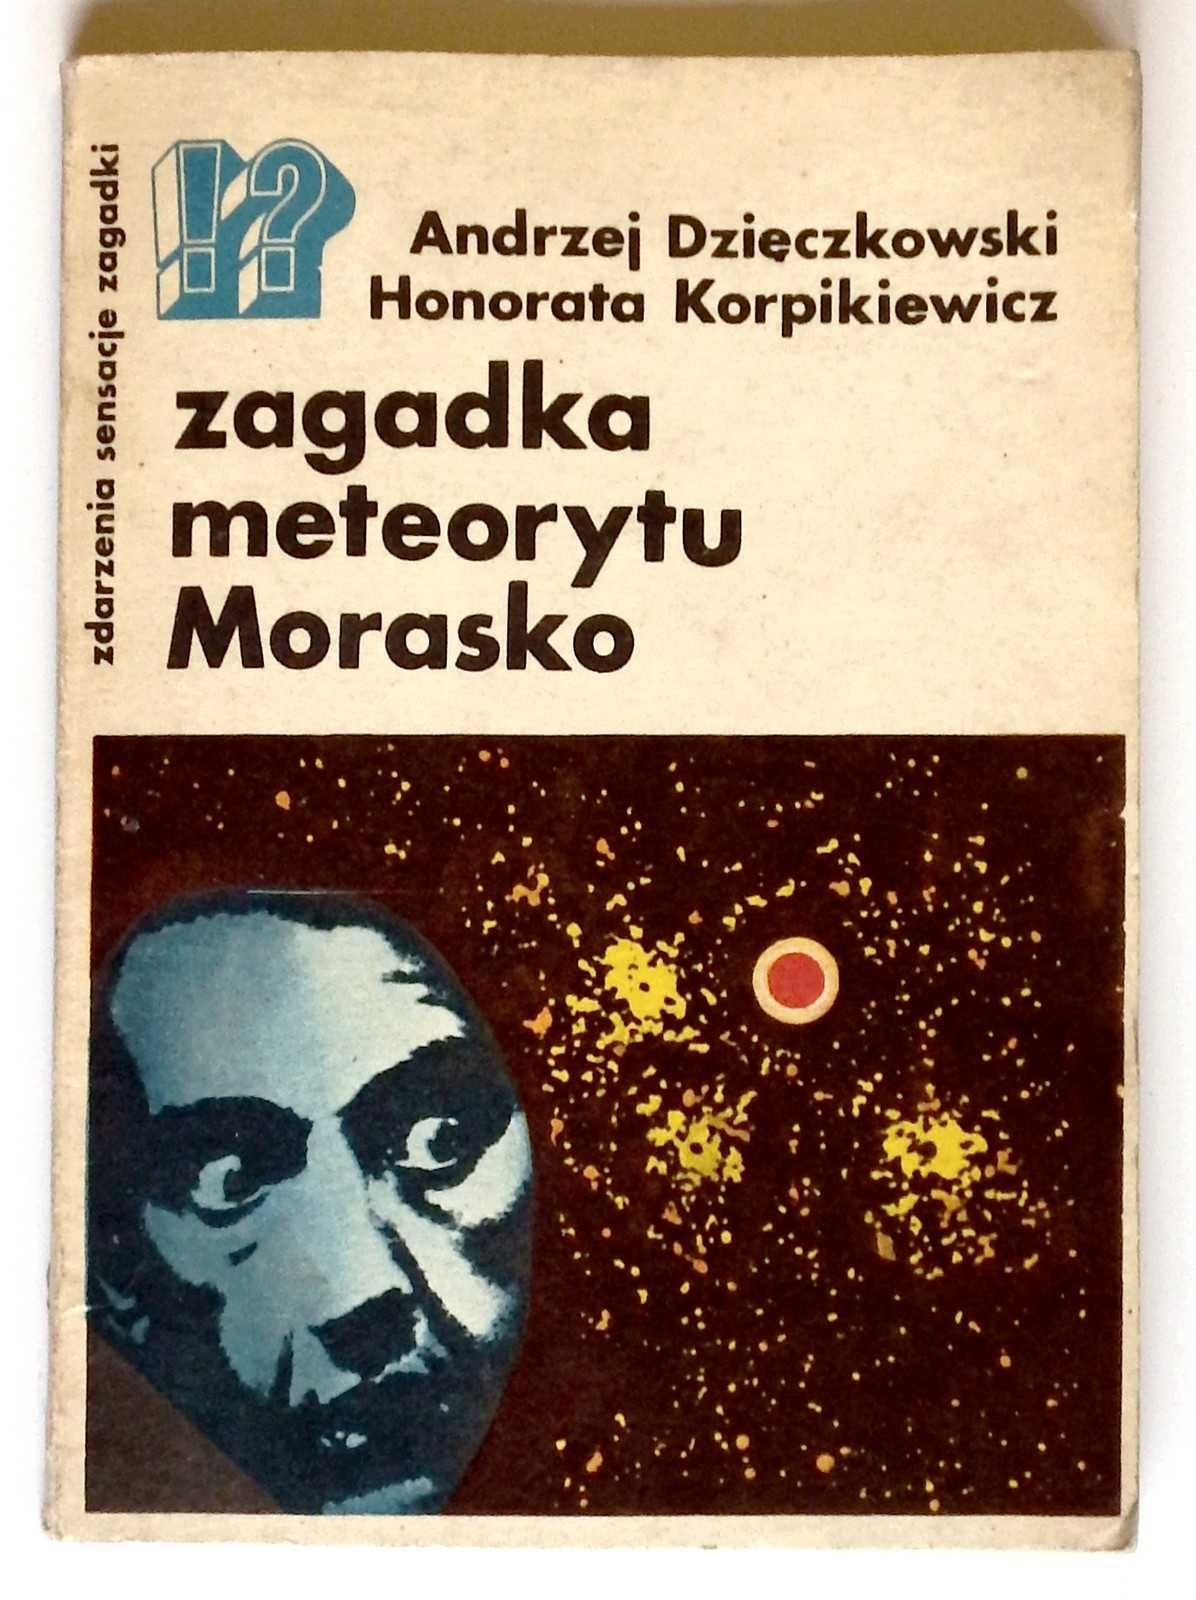 Dzieczkowski A., Korpikiewicz H. - "Zagadka meteorytu Morasko"